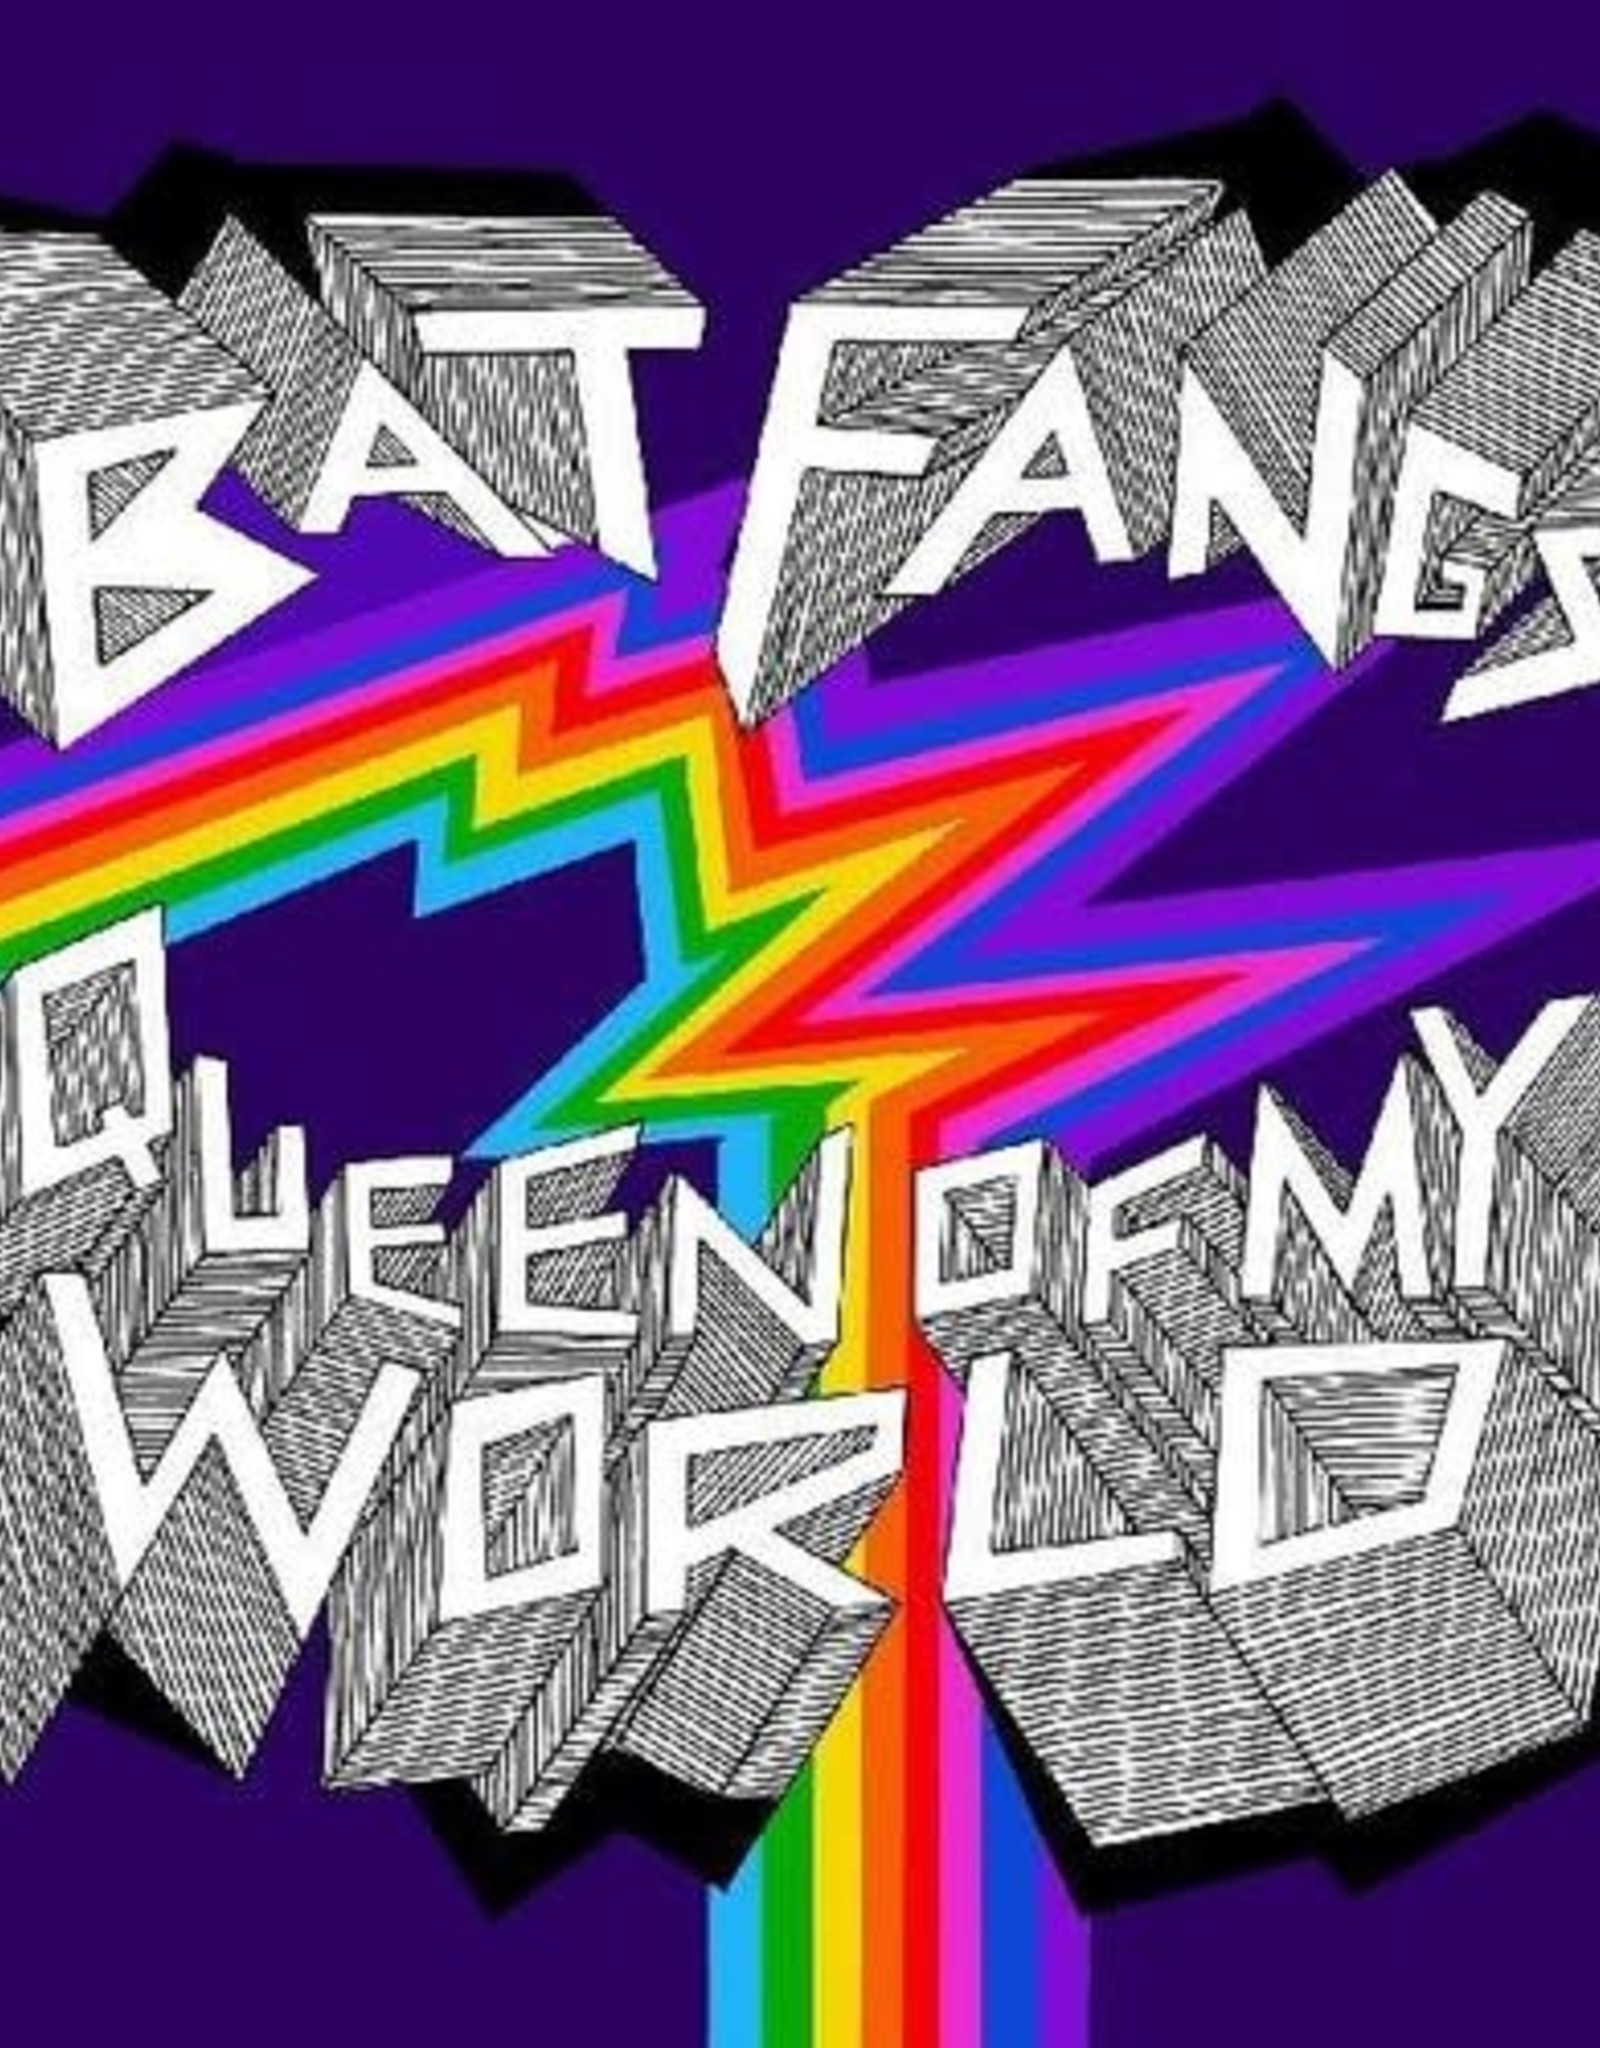 Bat Fangs - Queen Of My World